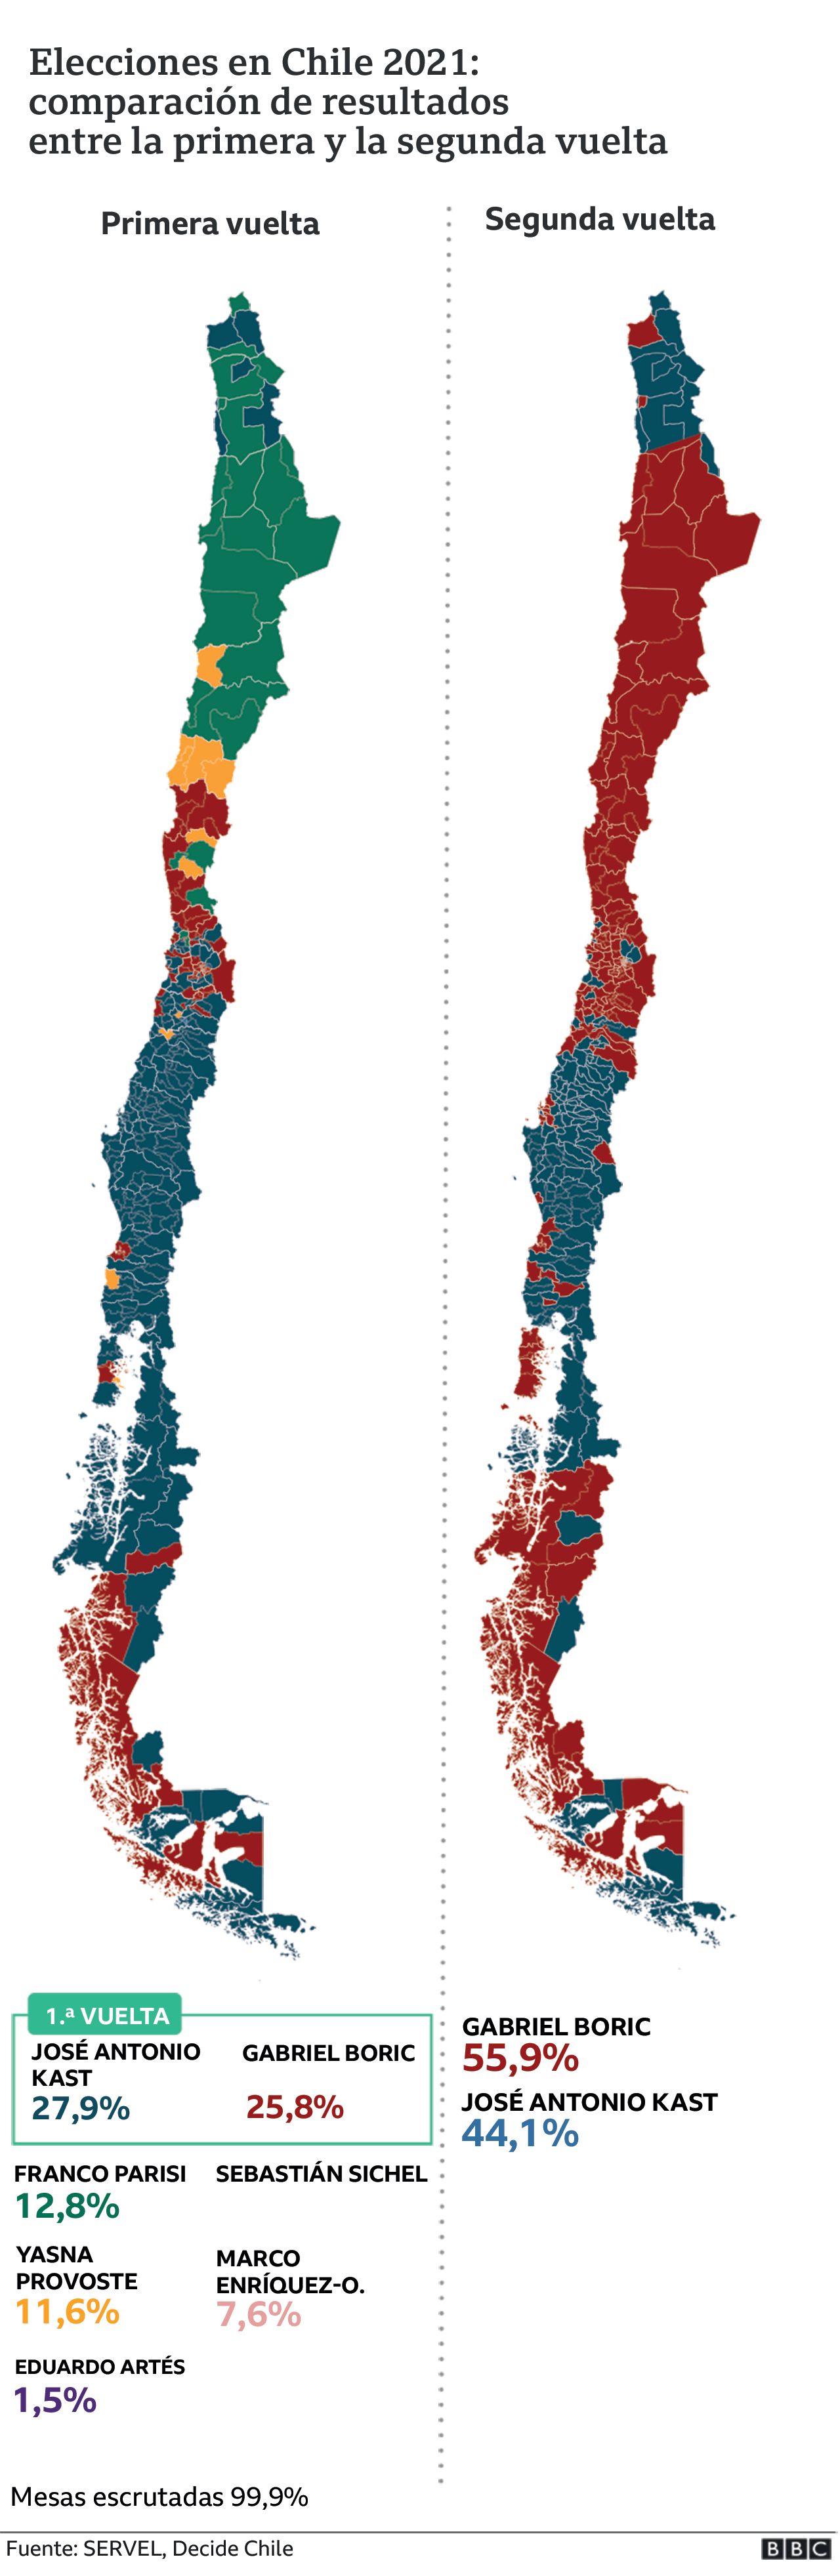 Comparación resultados primera y segunda vuelta de las elecciones presidenciales Chile 2021.